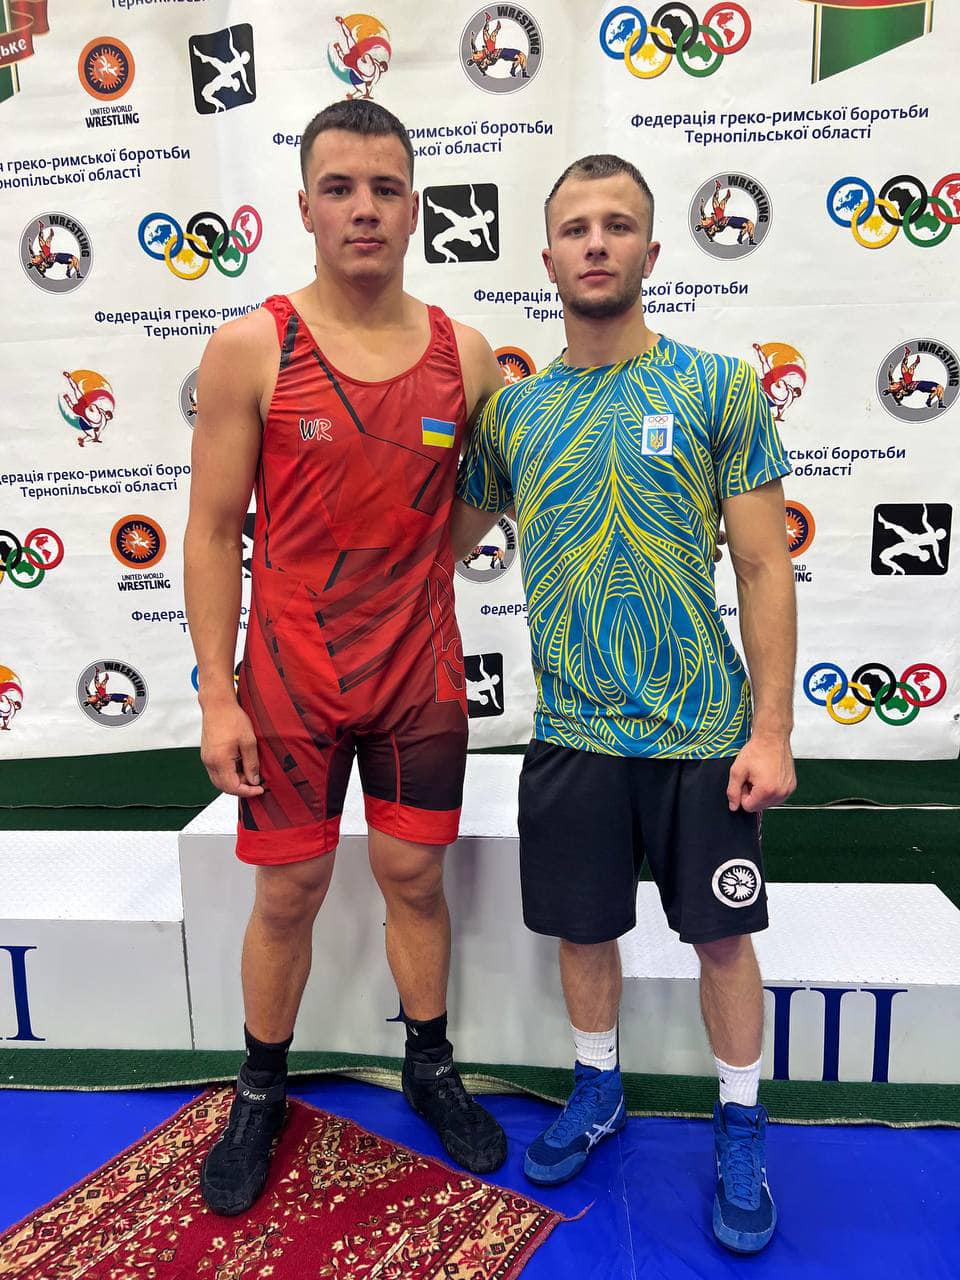 Двоє рівненських борців здобули золото на турнірі в Тернополі